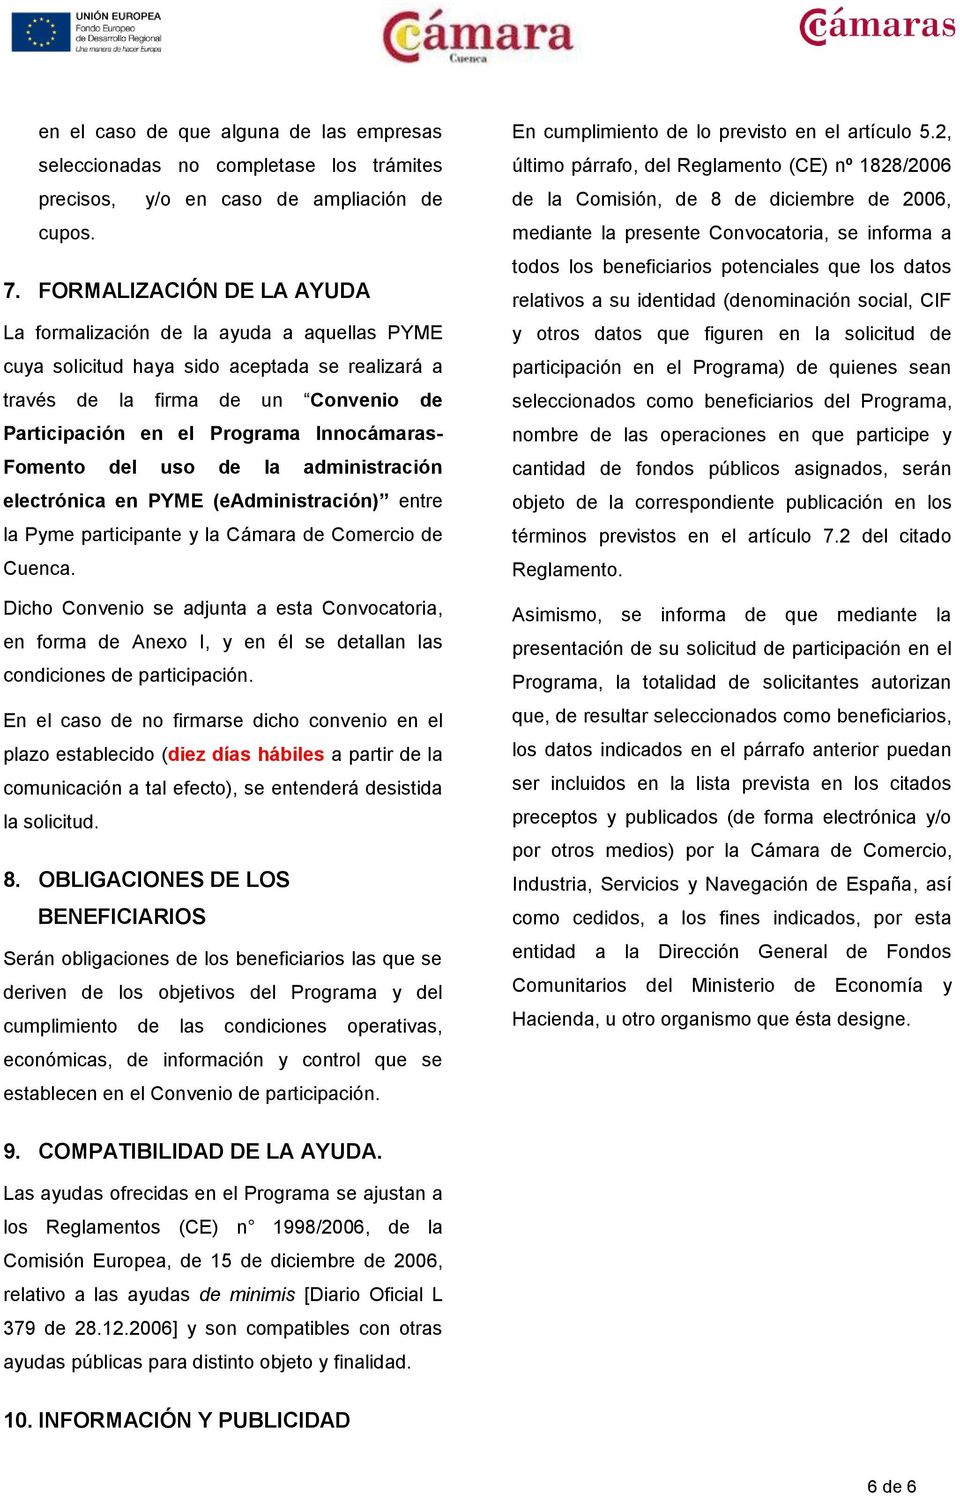 Fomento del uso de la administración electrónica en PYME (eadministración) entre la Pyme participante y la Cámara de Comercio de Cuenca.